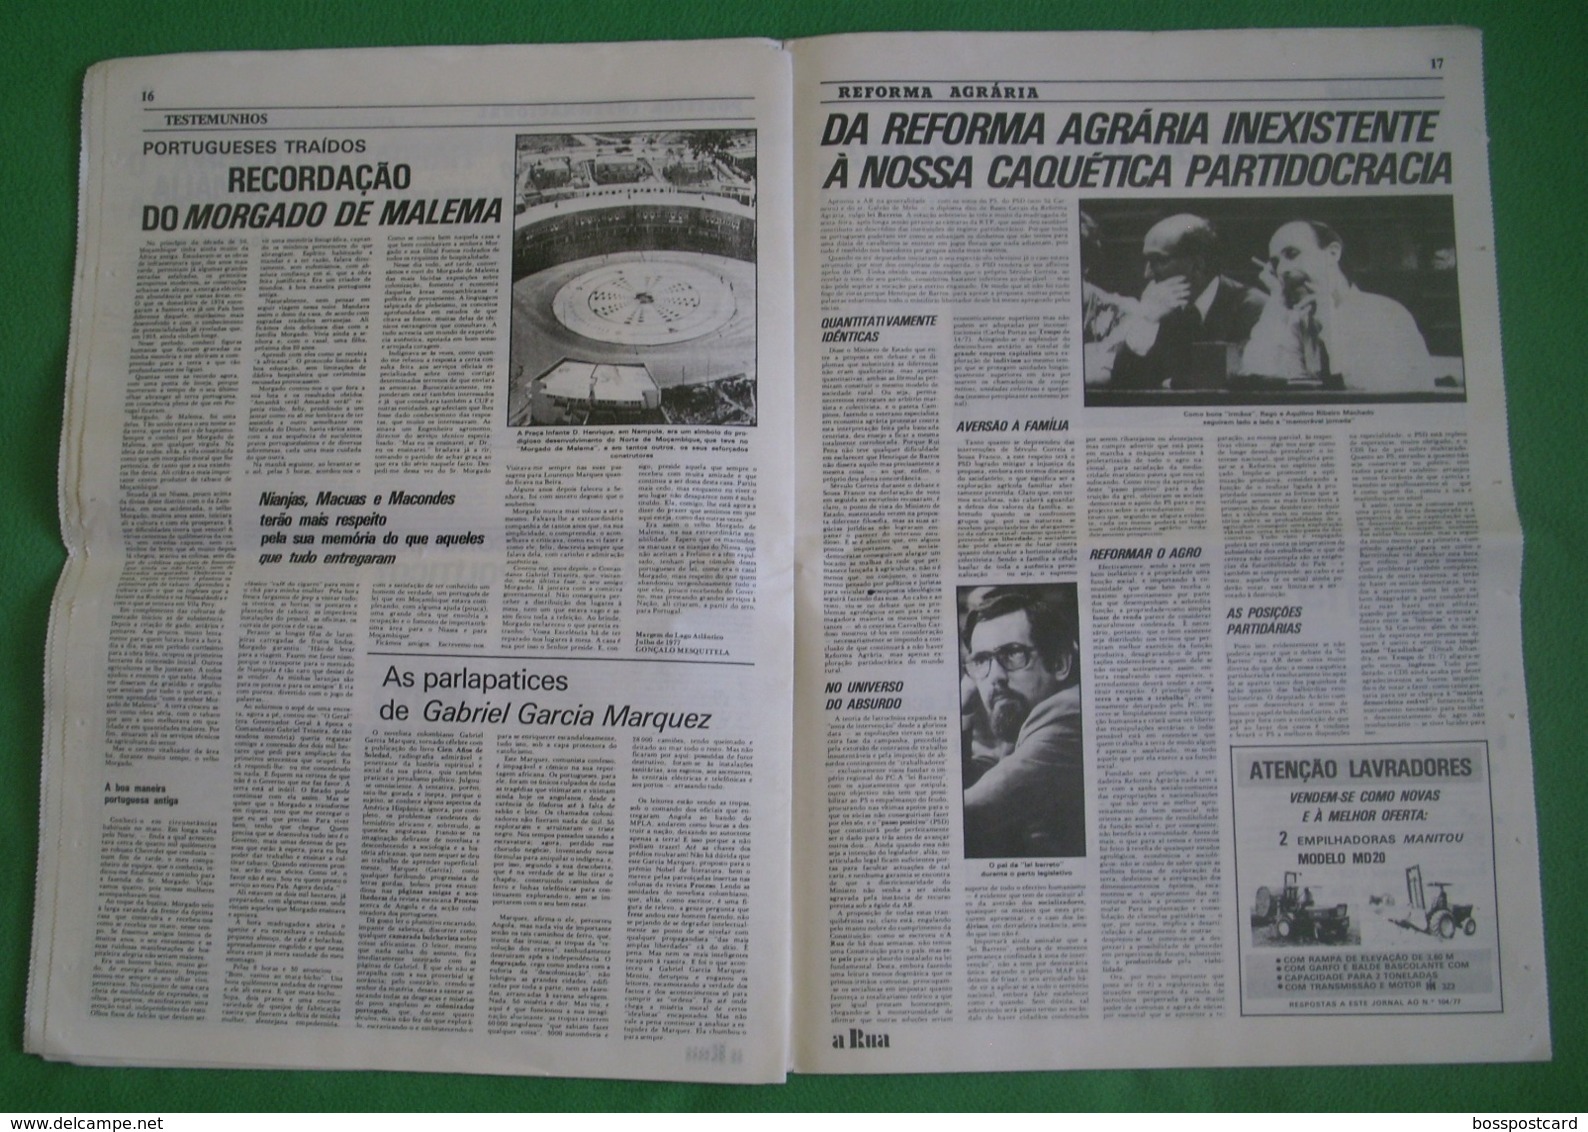 Lisboa - Portugal - Jornal A Rua Nº 69 de Julho de 1977 - República Portuguesa  Imprensa - 25 de Abril - PREC - Salazar